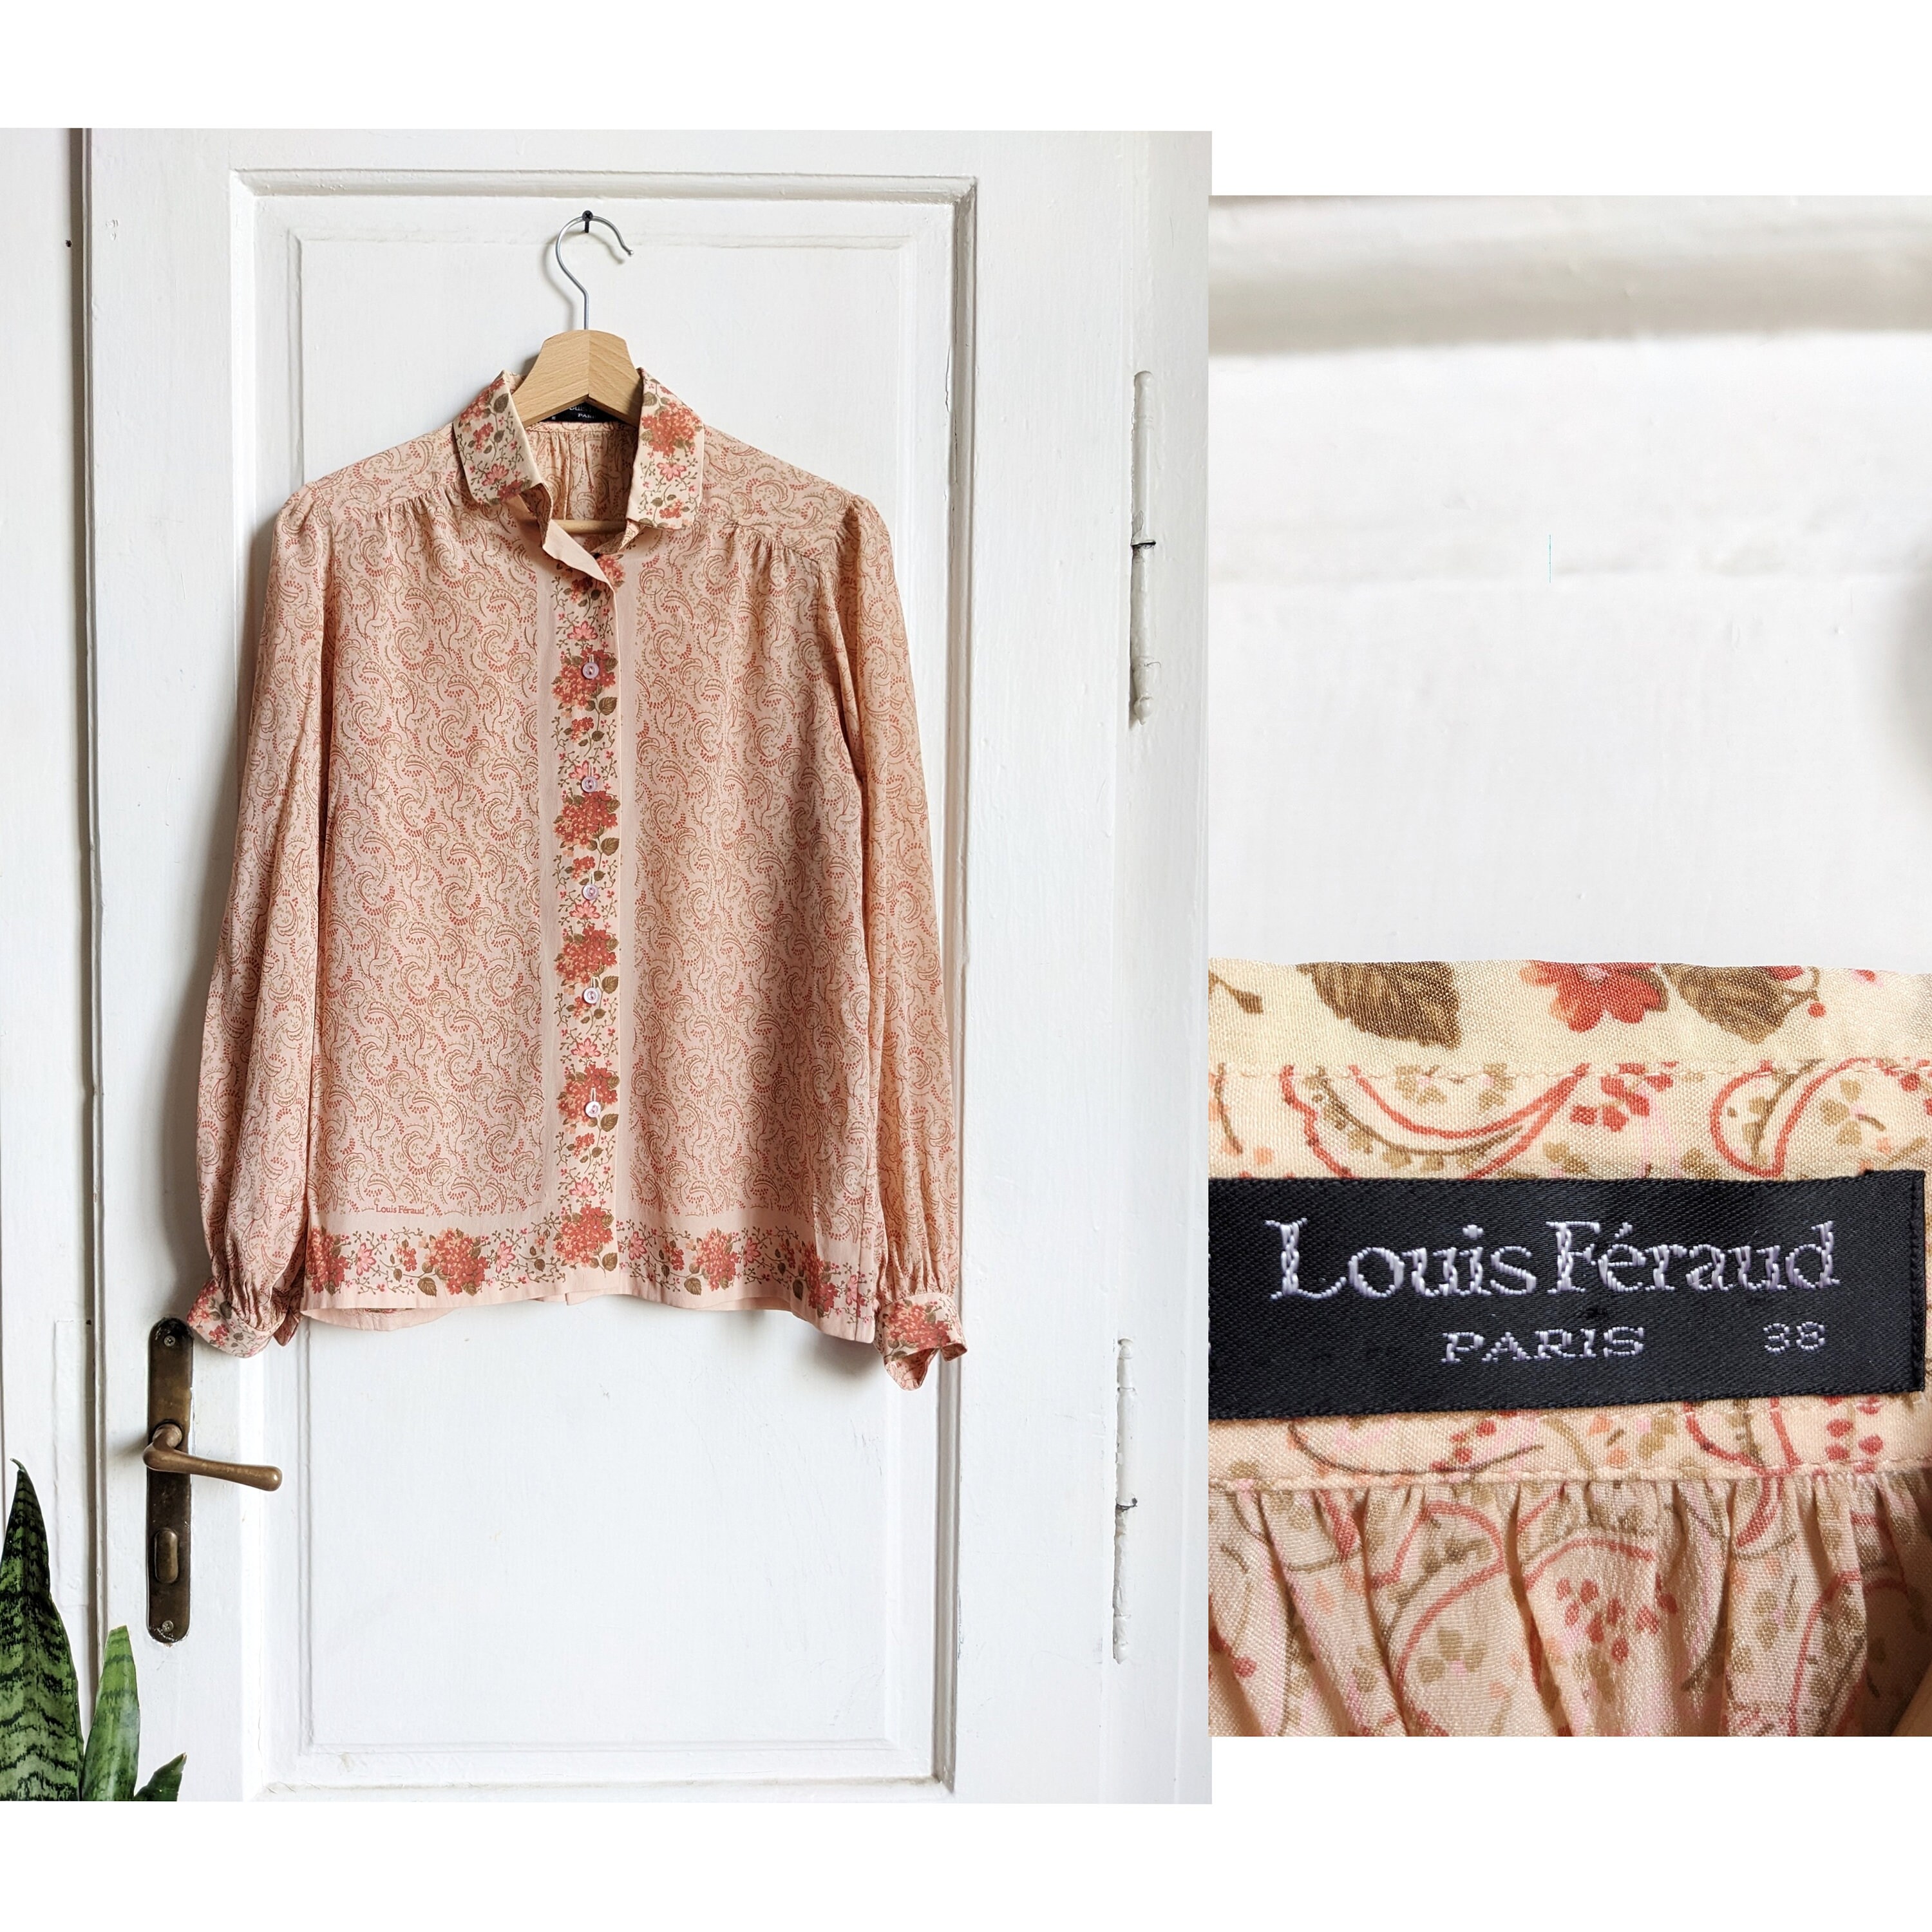 Louis Feraud Polo shirt, Men's Fashion, Tops & Sets, Tshirts & Polo Shirts  on Carousell